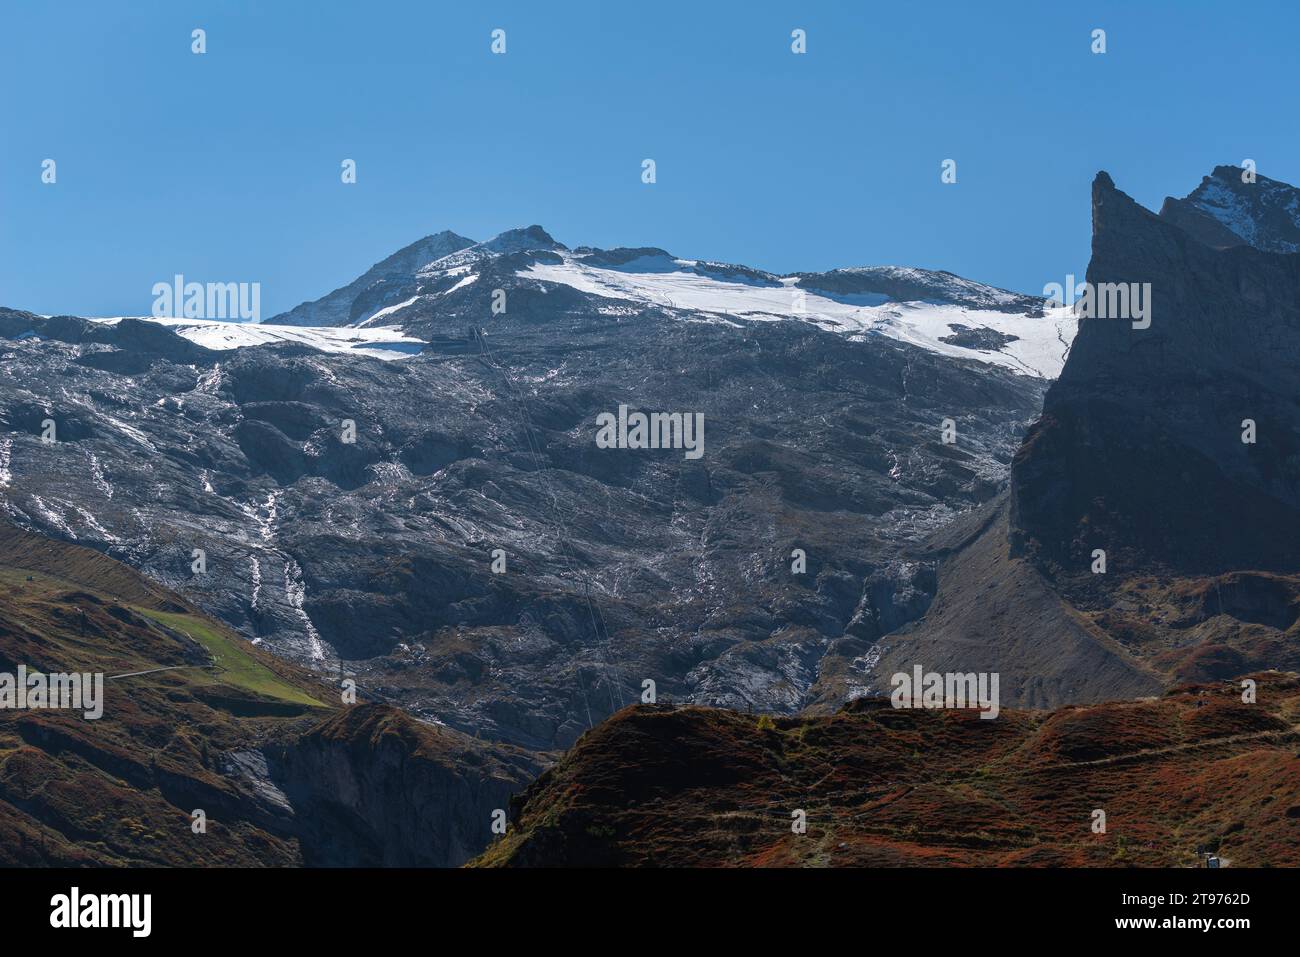 Hintertux Glacier Express, interescale à Sommerbergalm (2,200m) , région de randonnée populaire, Alpes de Zillertal, Tyrol, Autriche, Europe Banque D'Images